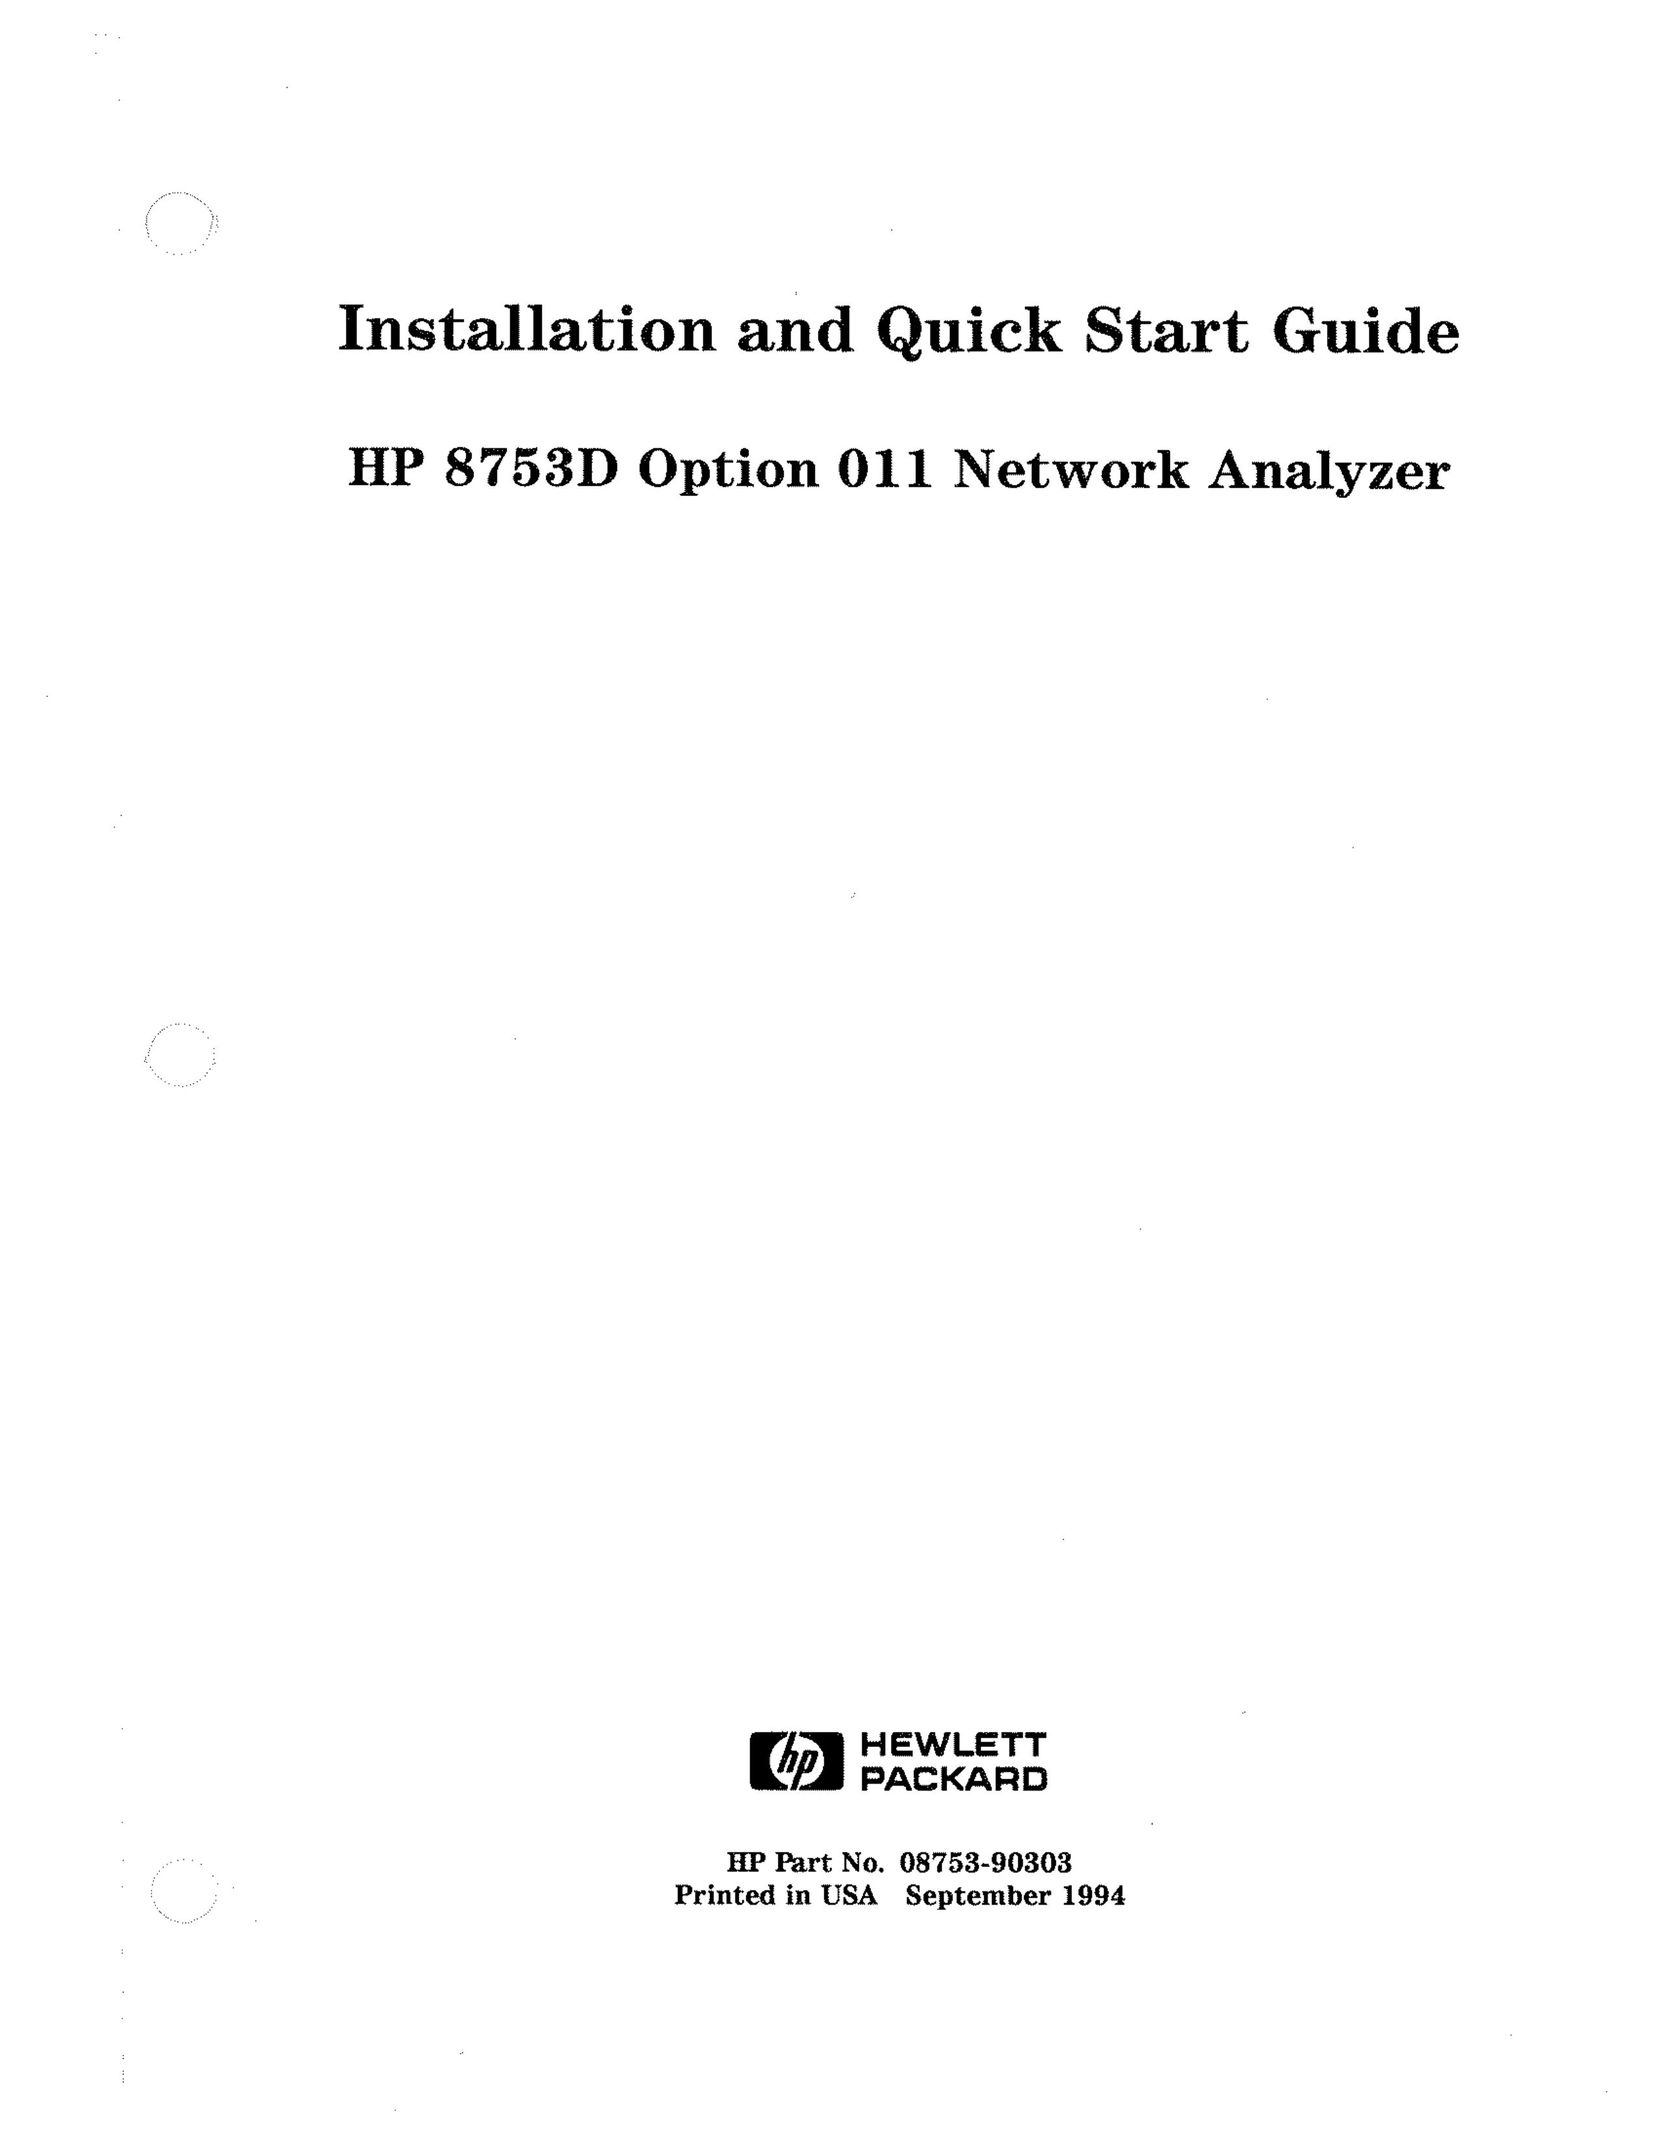 HP (Hewlett-Packard) HP 8753D Network Hardware User Manual